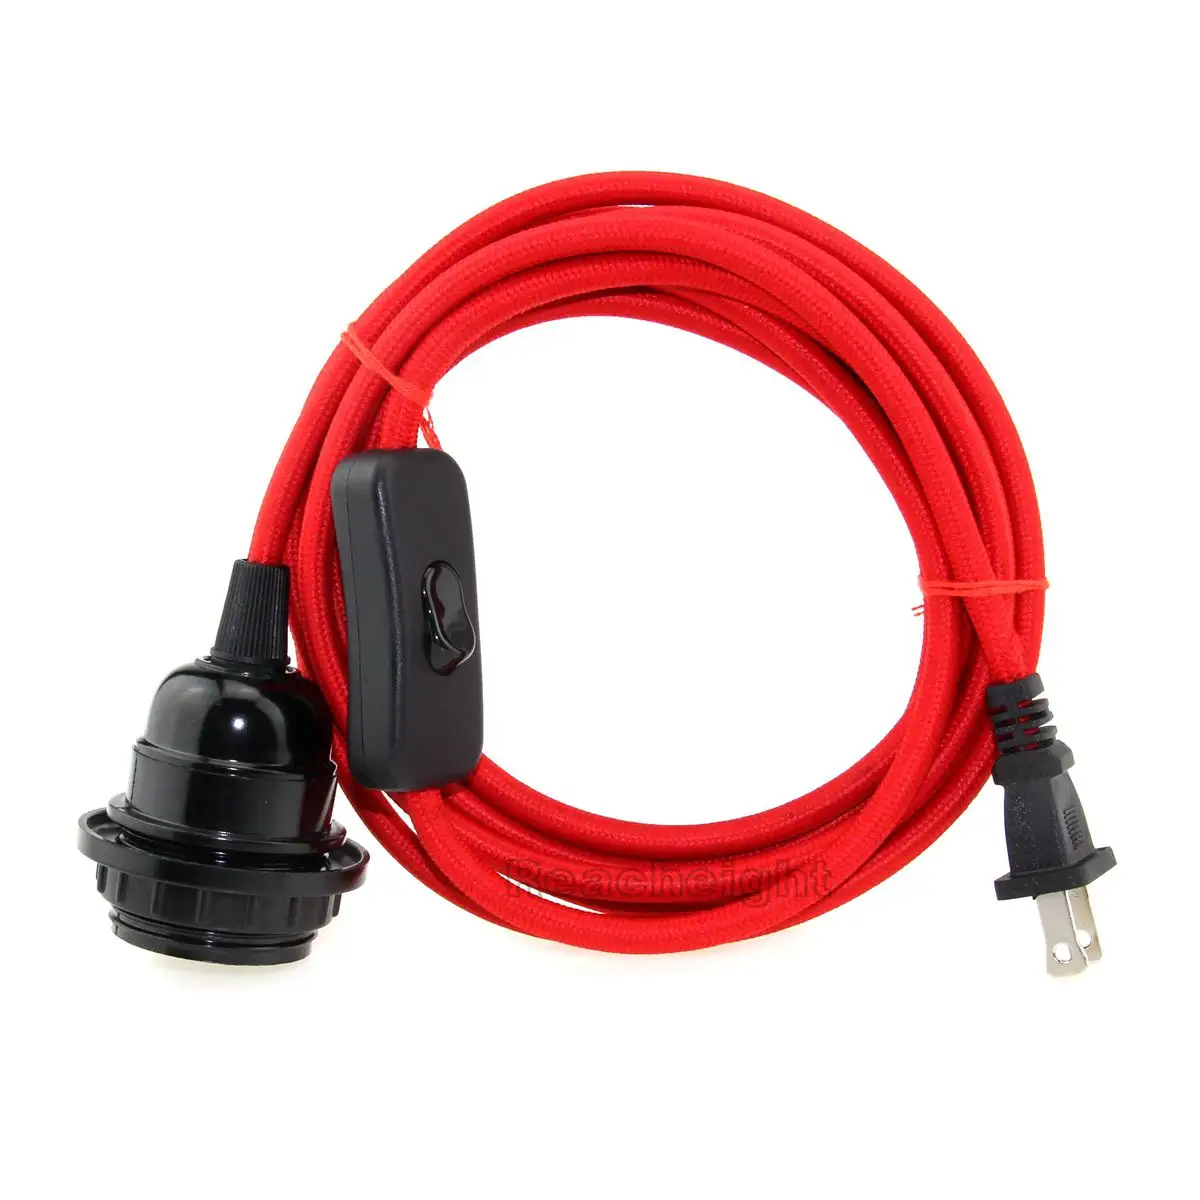 Enchufe polarizado E26, juego de cable de lámpara con interruptor, rojo, negro, blanco, 6,5 pies, 2 clavijas, EE. UU.